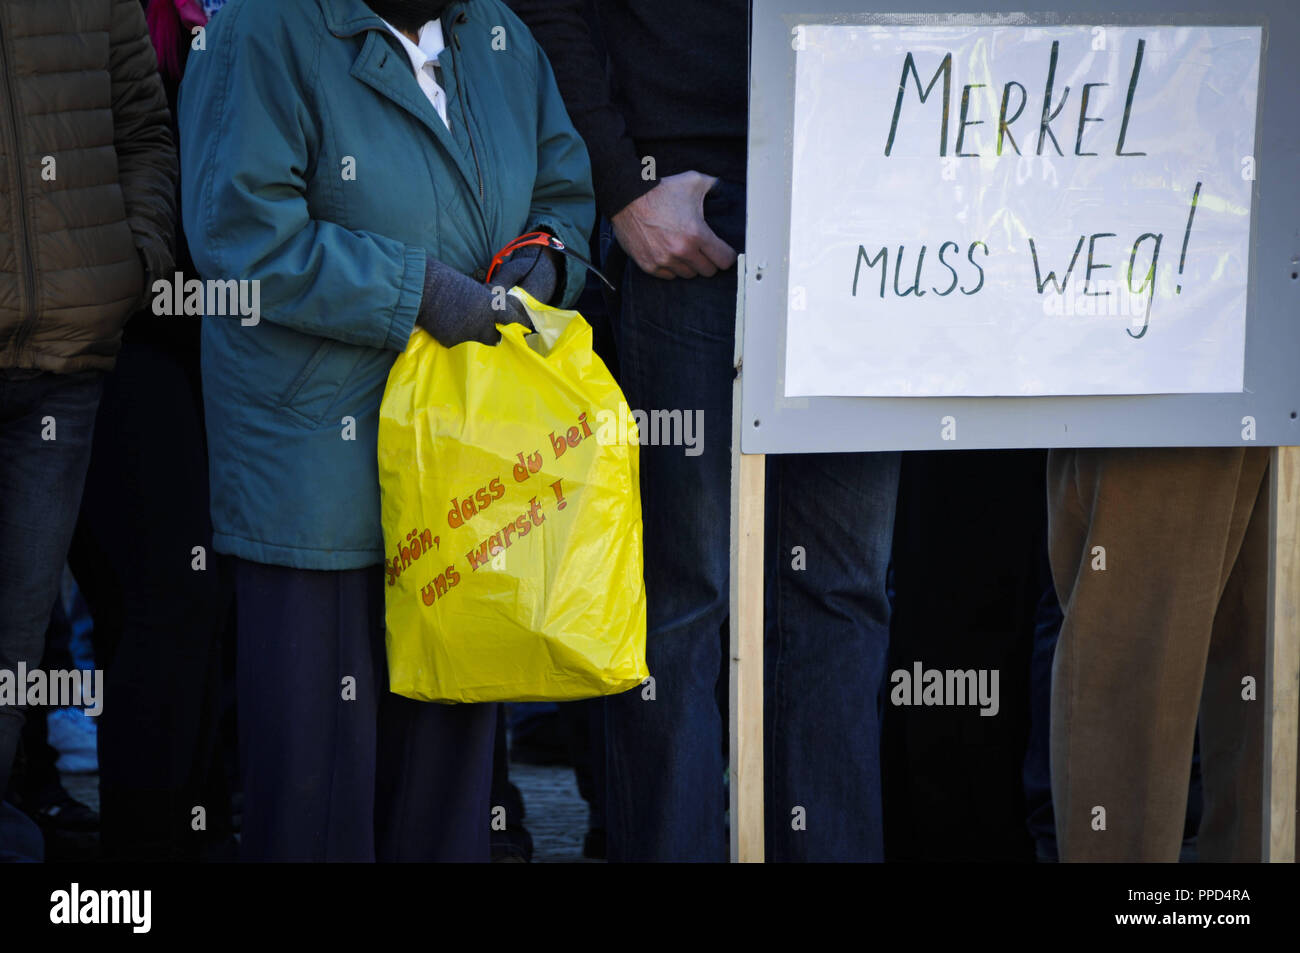 Der Russlanddeutschen sammeln in der Stadt Traunreut gegen die Flüchtlingspolitik der Angela Merkel, der Islam und die angeblichen Lügen drücken Sie demonstrieren. Im Bild sehen Sie den Slogan "Schön, dass Sie bei uns waren' auf einer Einkaufstasche, neben Banner mit der Forderung 'MErkel muss gehen". Stockfoto